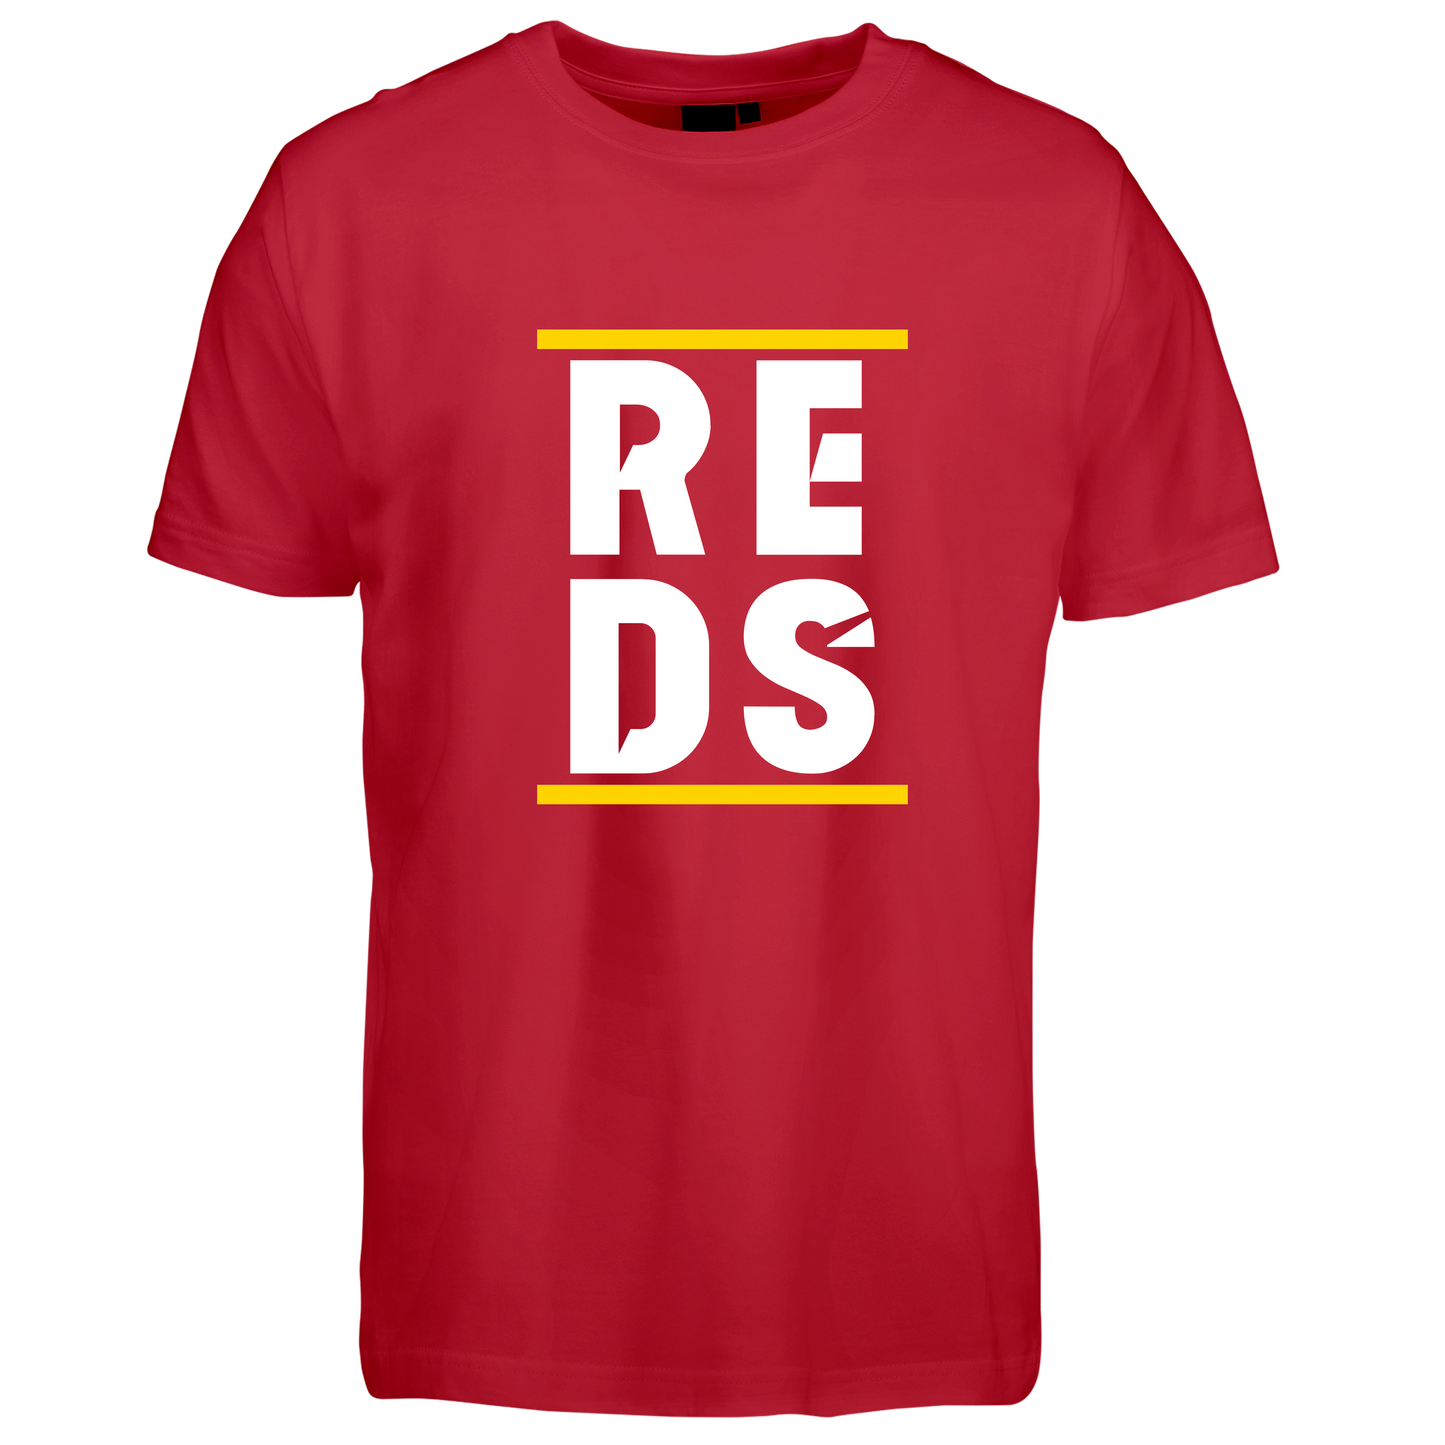 Reds - t-shirt